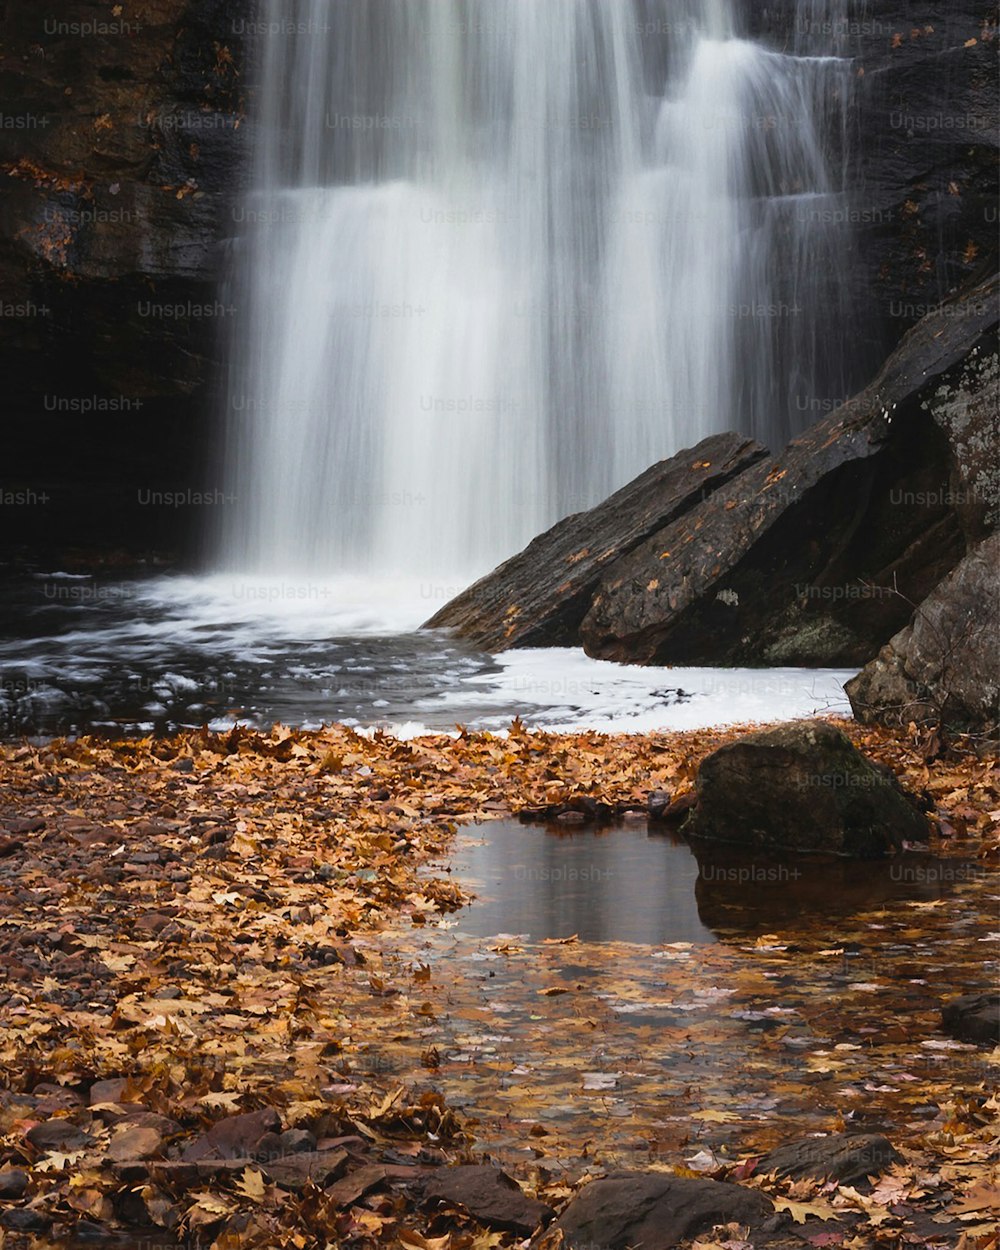 une cascade avec de l’eau en cascade sur des rochers et des feuilles mortes